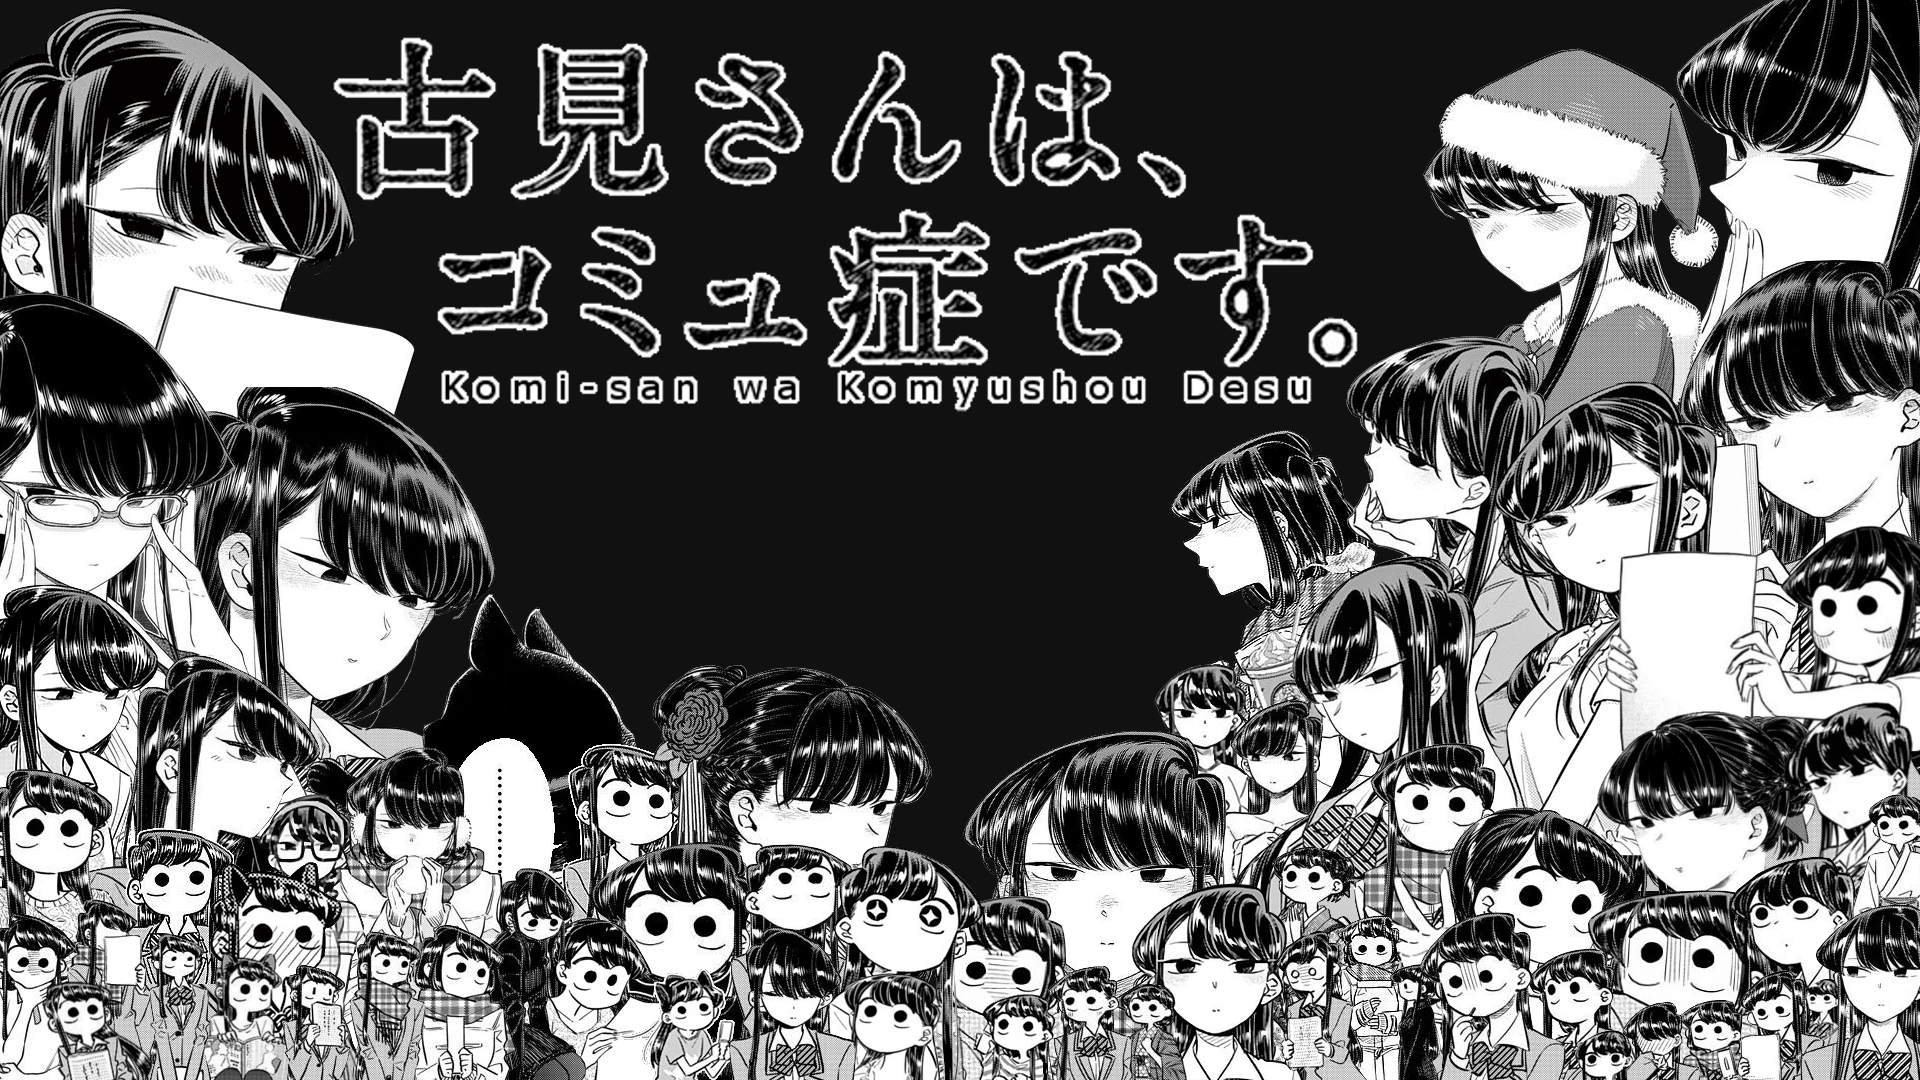 Komi Shouko  Komisan wa Komyushou Desu Wallpaper  Korigengi  Anime  Wallpaper HD Source